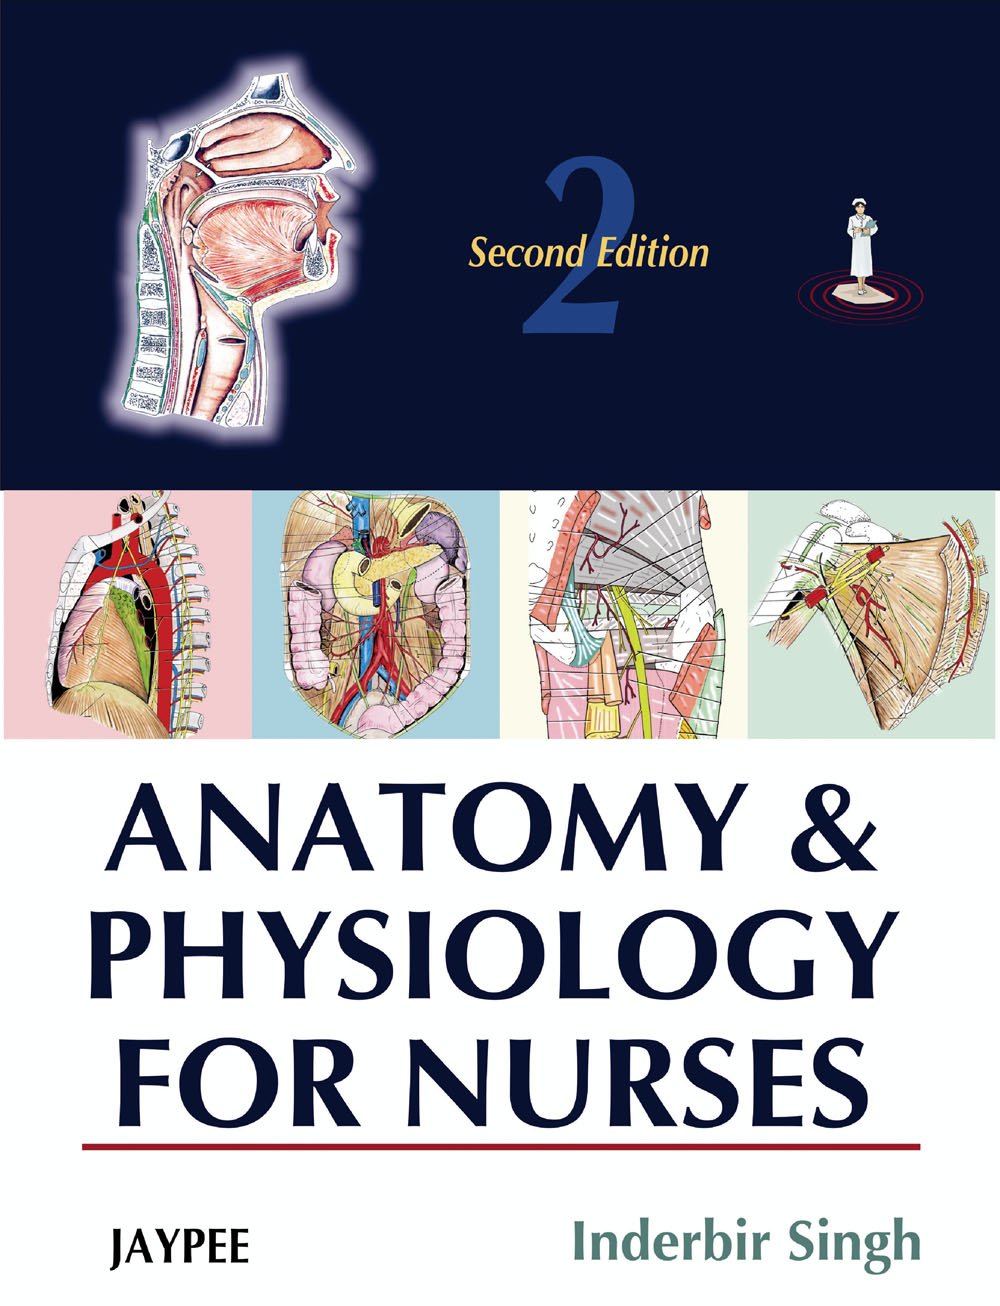 Anatomy & Physiology For Nurses